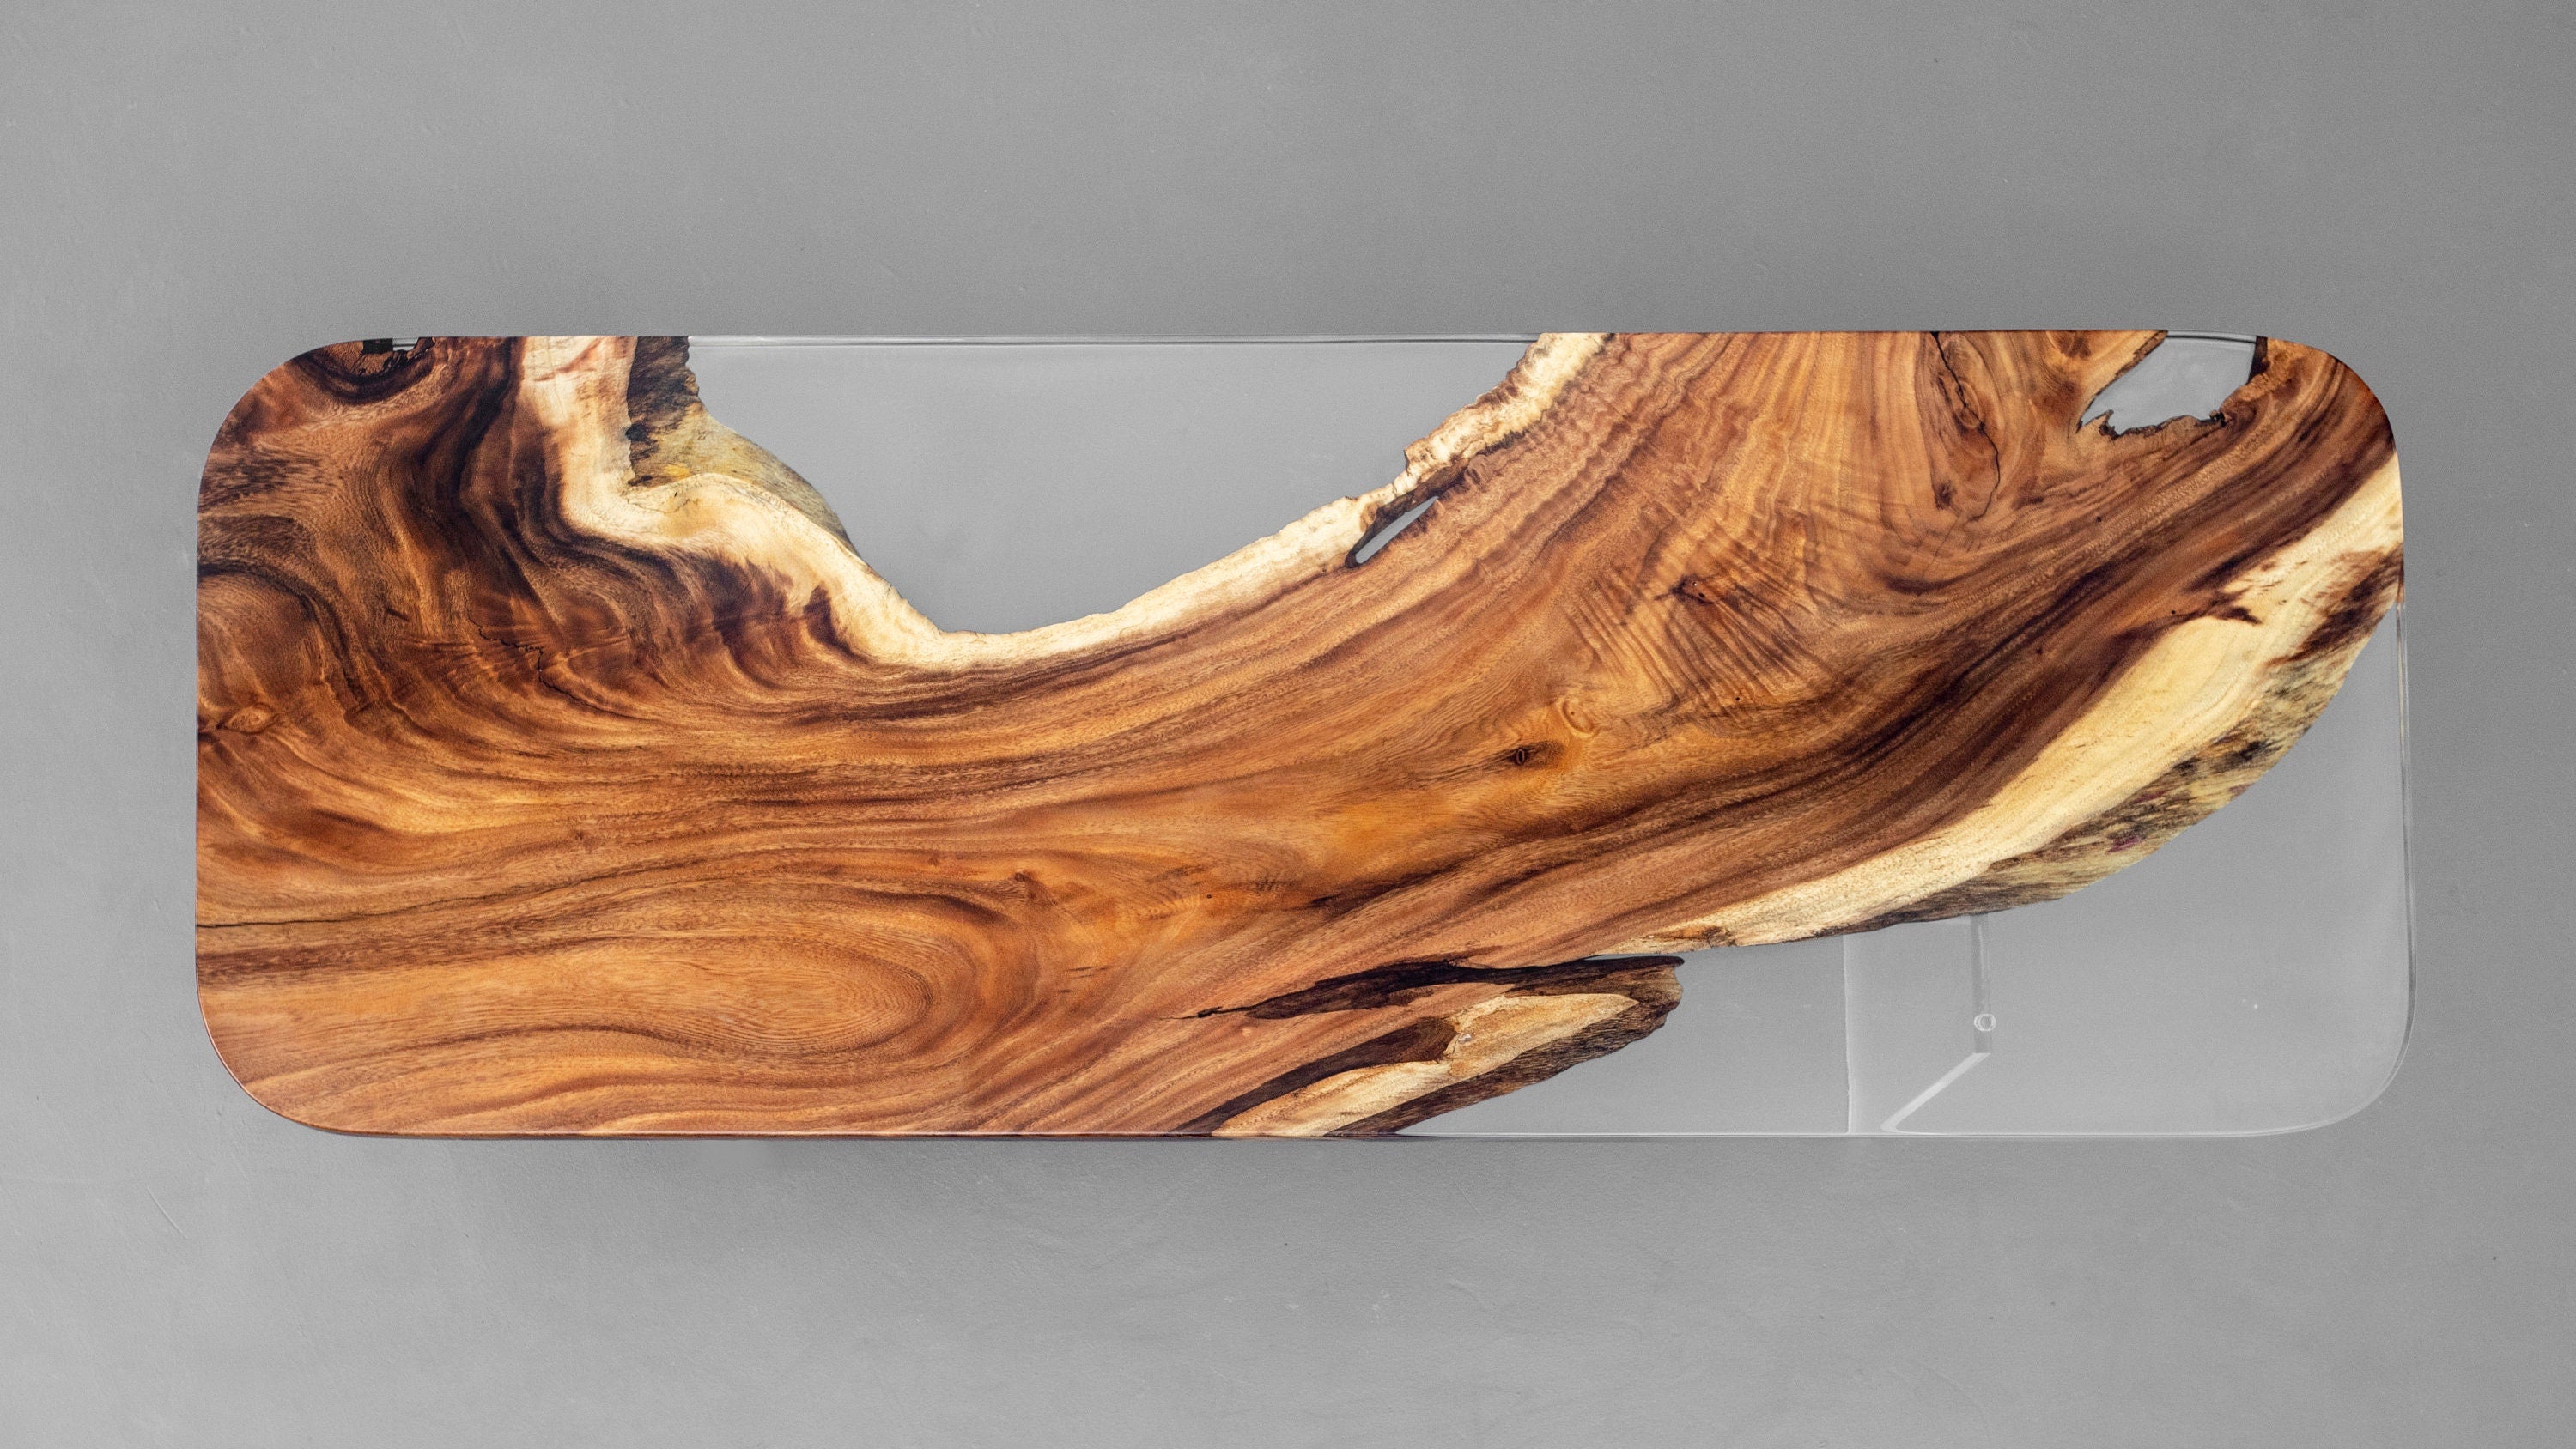 Forma speciale in legno per la selezione, tavolo fatto a mano, tavolo da pranzo epossidico in noce con bordo vivo